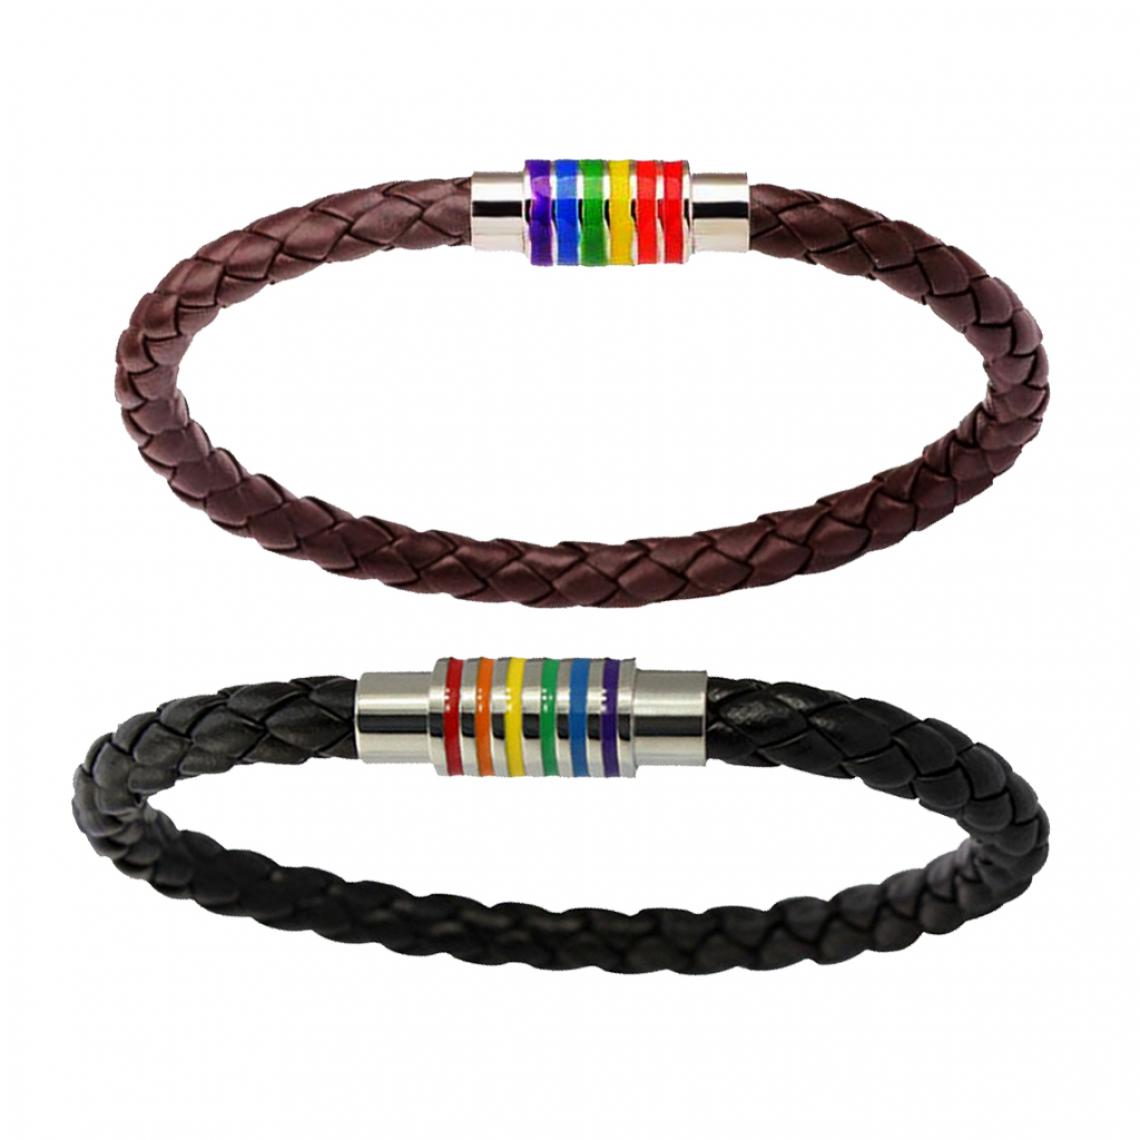 marque generique - 2pcs Bracelet Tressé en Cuir PU avec Fermoir Magnétique Arc en Ciel LGBT Bijoux - Bracelet connecté